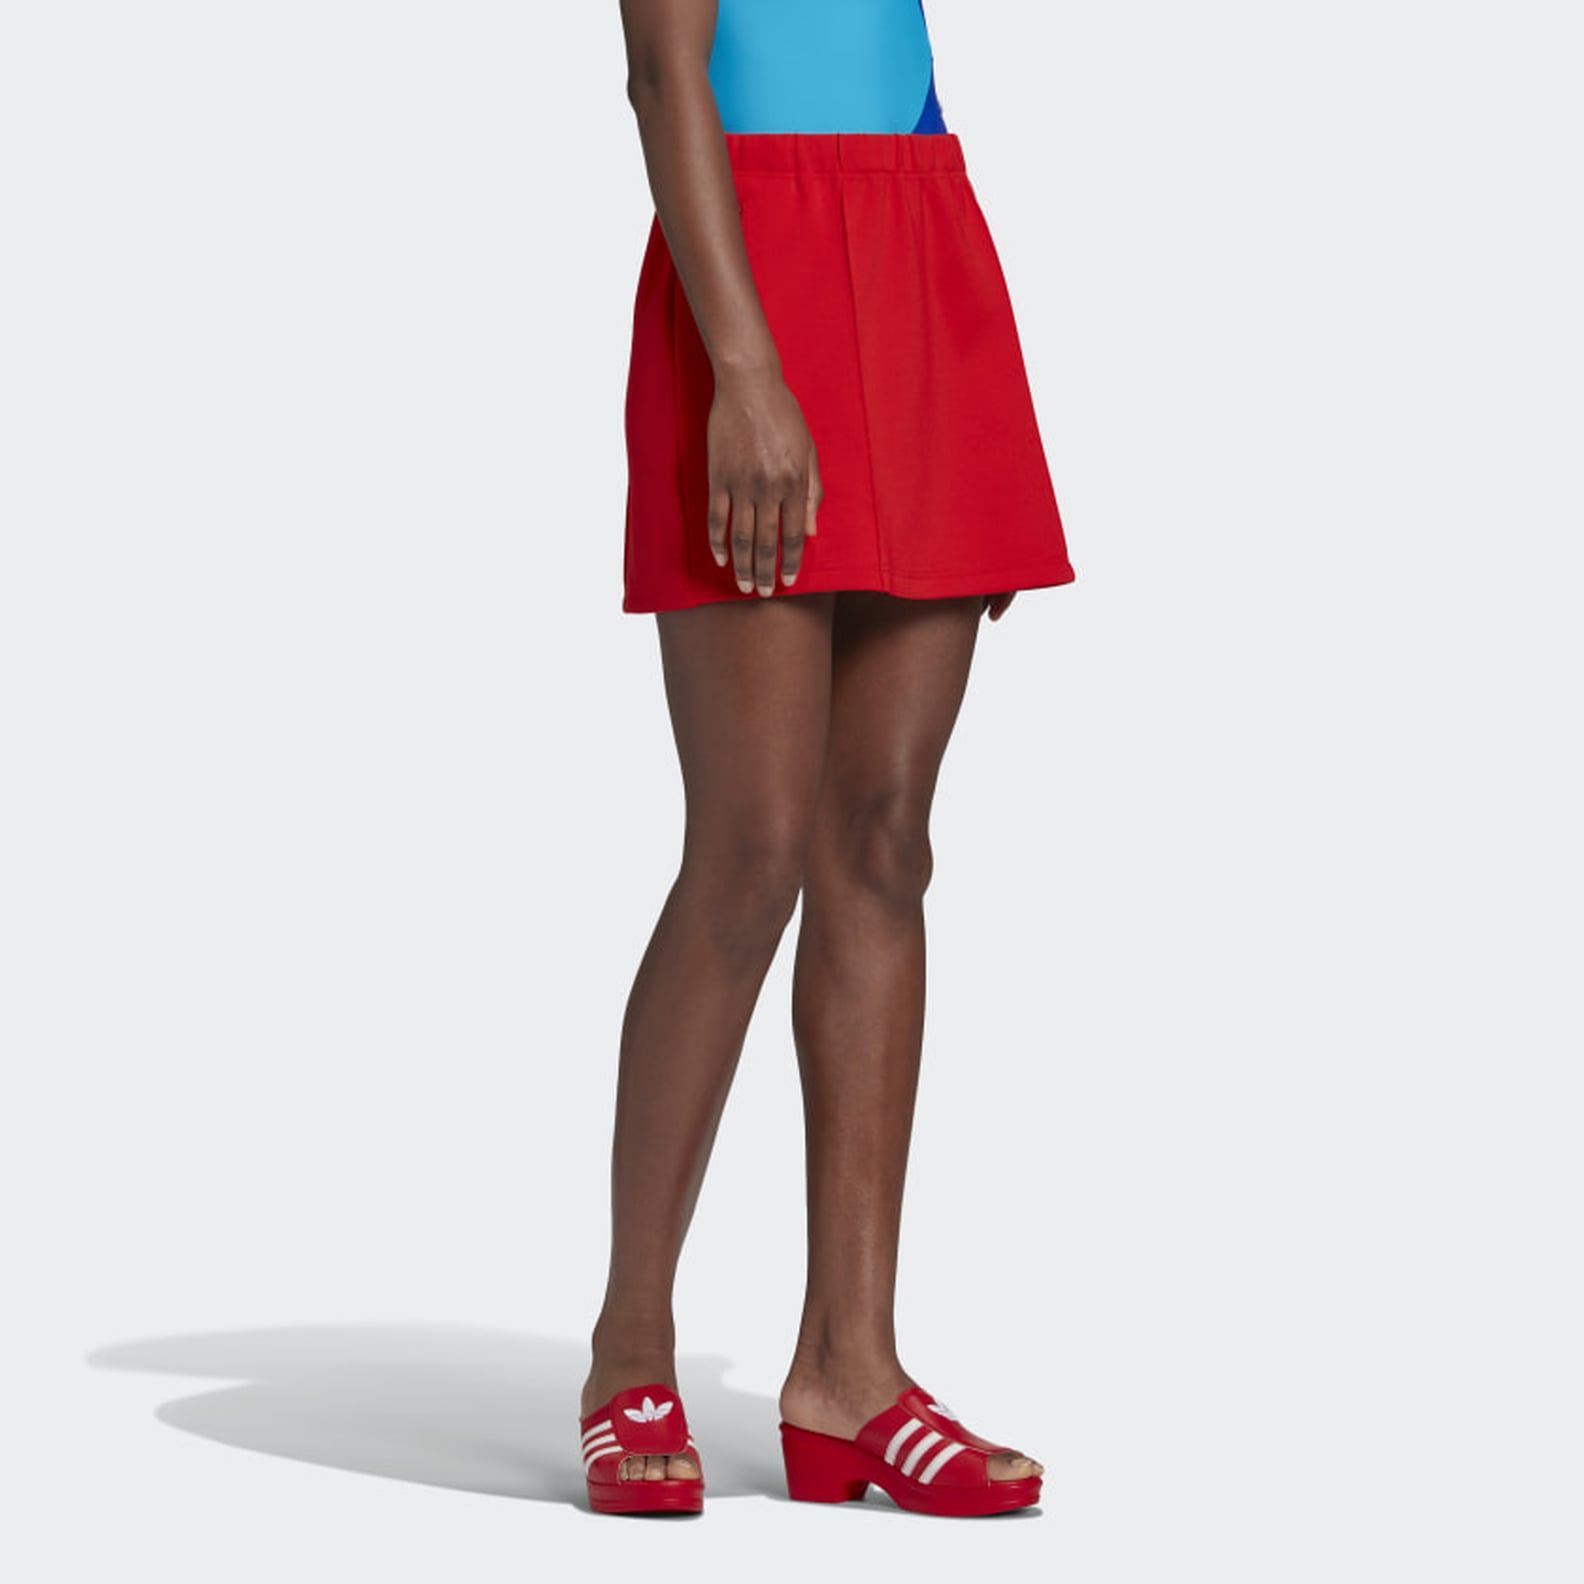 How a Fashion Editor Styles a Tennis Skirt | POPSUGAR Fashion